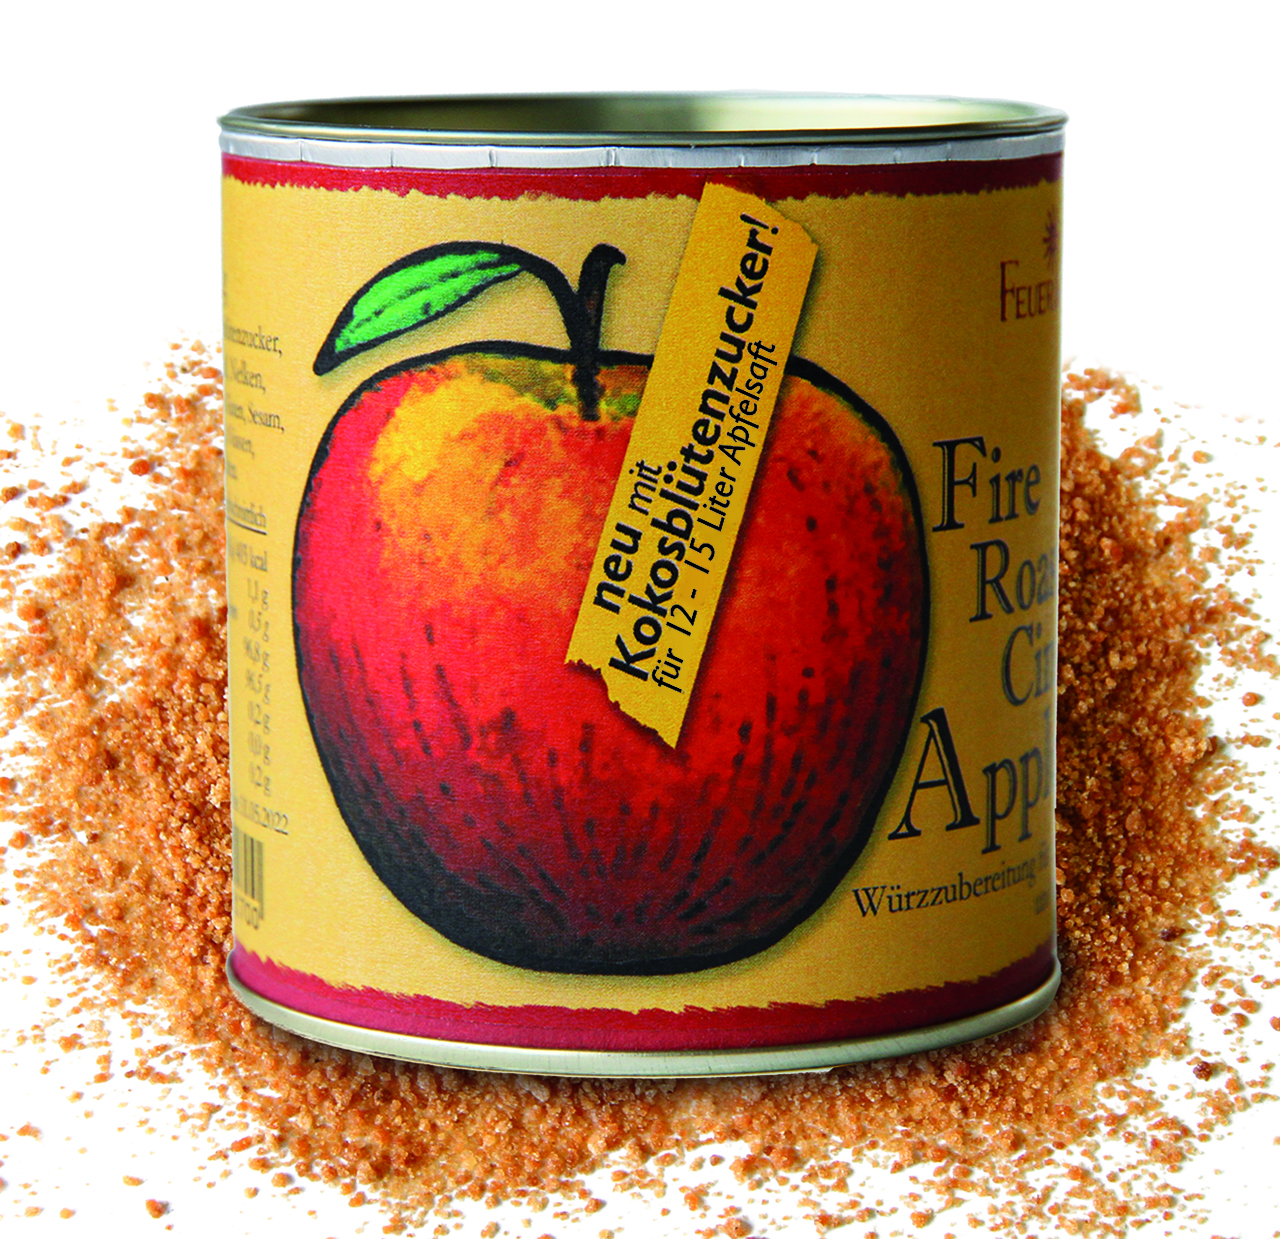 1 VE 24 Stück: Das Neue Bio- Fire Roasted Cinnamon Apple Spices  Füllgewicht: 130g